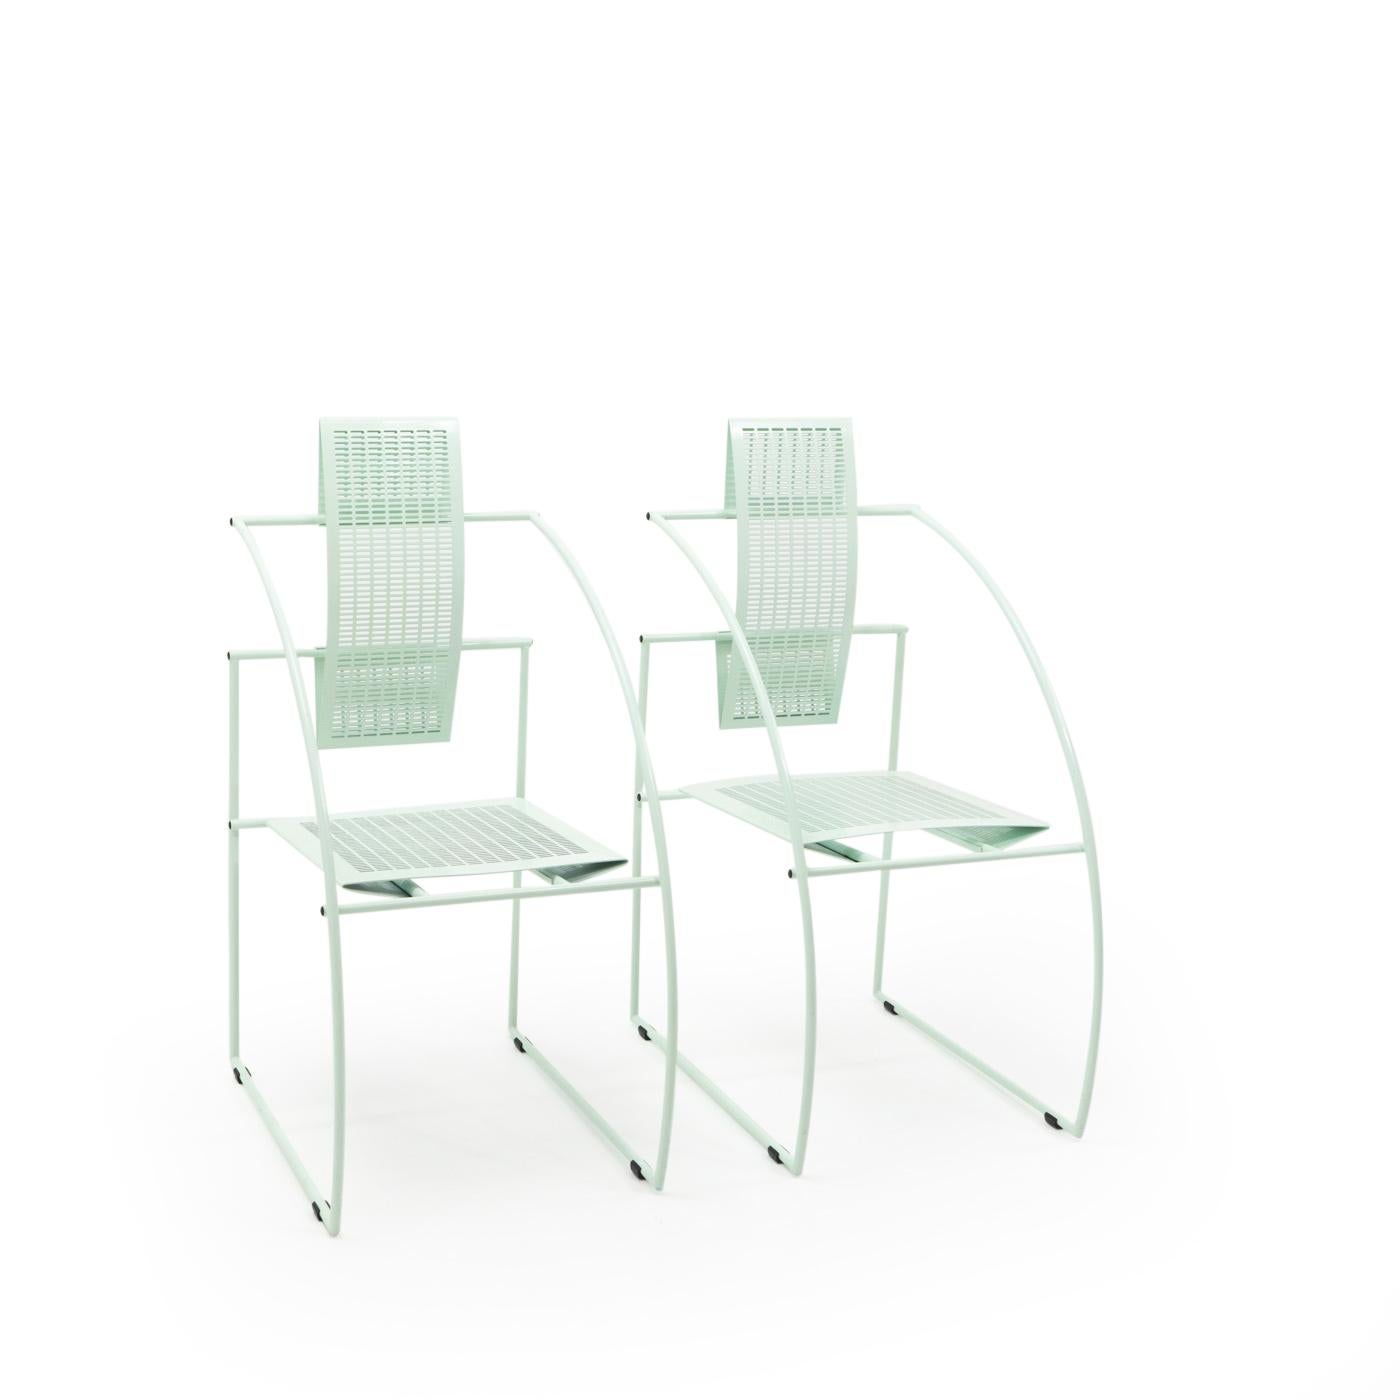 La chaise Quinta est une pièce emblématique du design, avec l'utilisation de la tôle perforée et des tubes, qui sont typiques des meubles et des lampes de Botta. Les lignes de ces chaises sont nettes, rationnelles et symétriques, et sont considérées